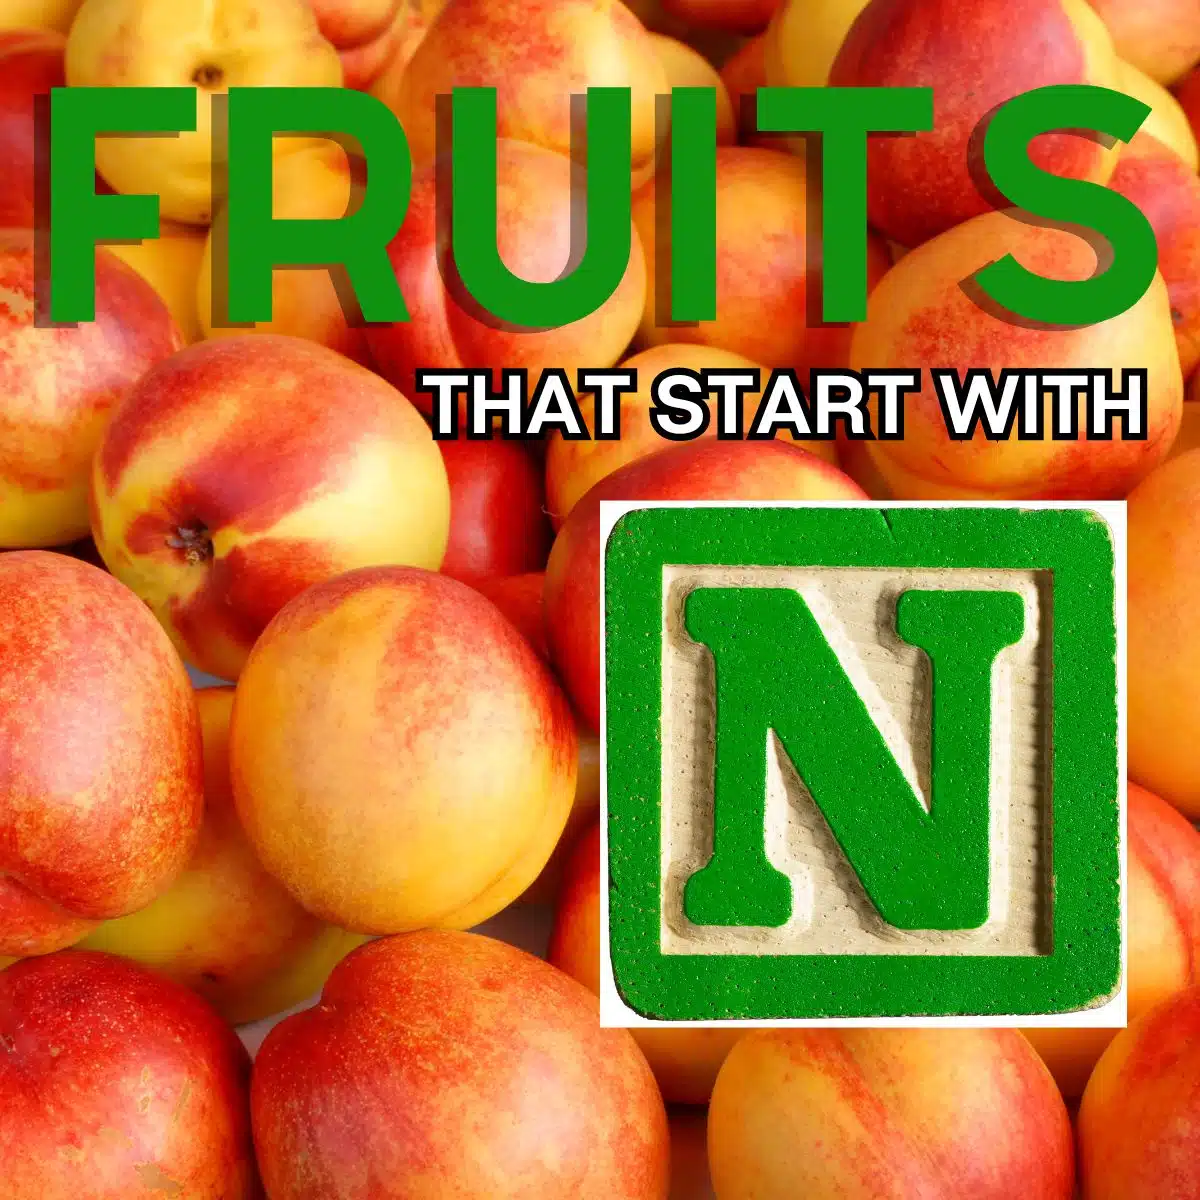 N으로 시작하는 과일의 정사각형 이미지로 천도복숭아가 특징입니다.